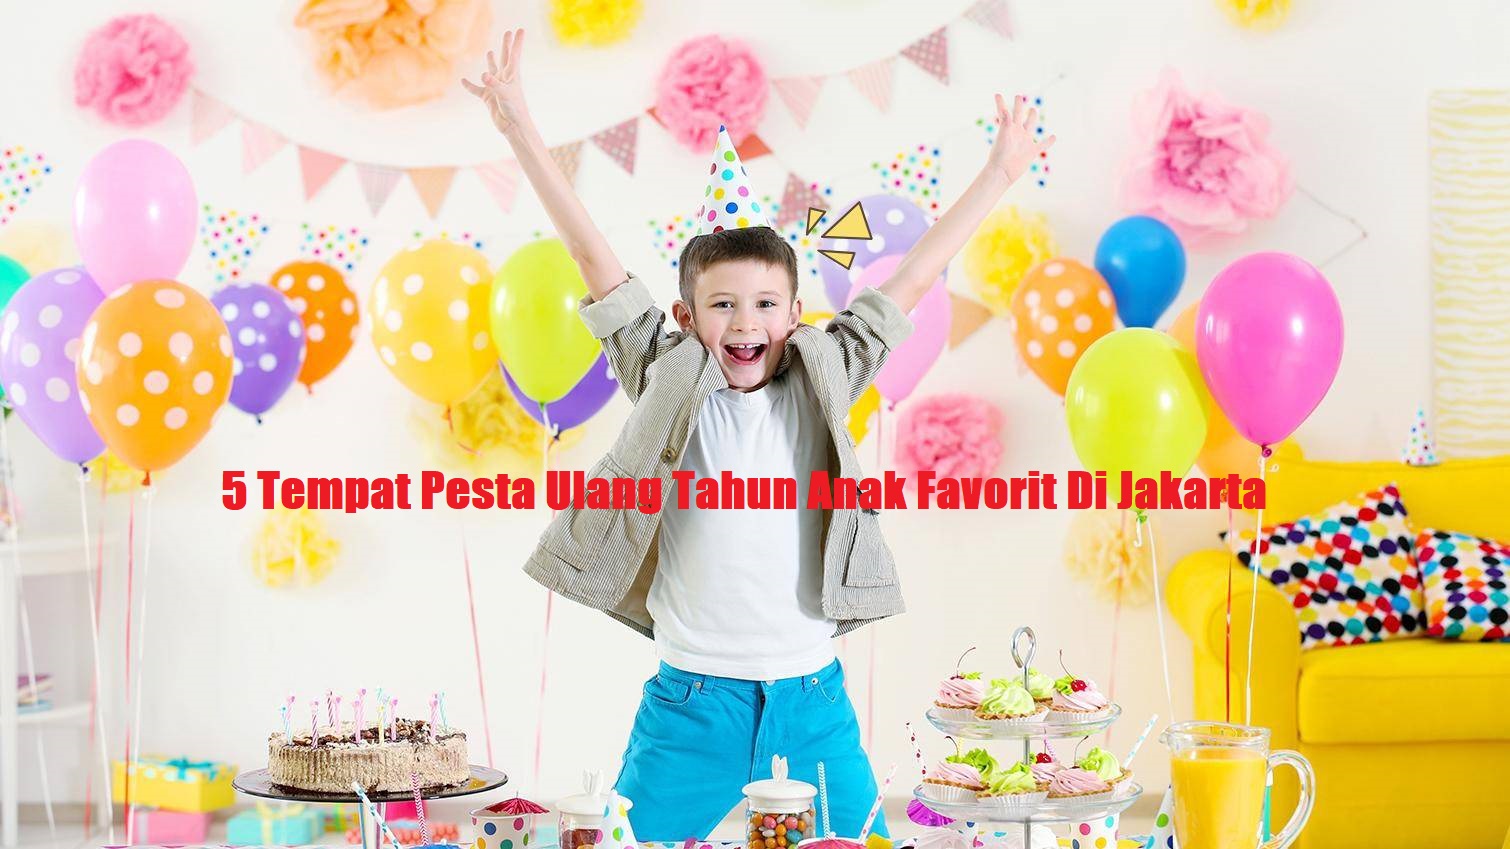 5 Tempat Pesta Ulang Tahun Anak Favorit Di Jakarta post thumbnail image